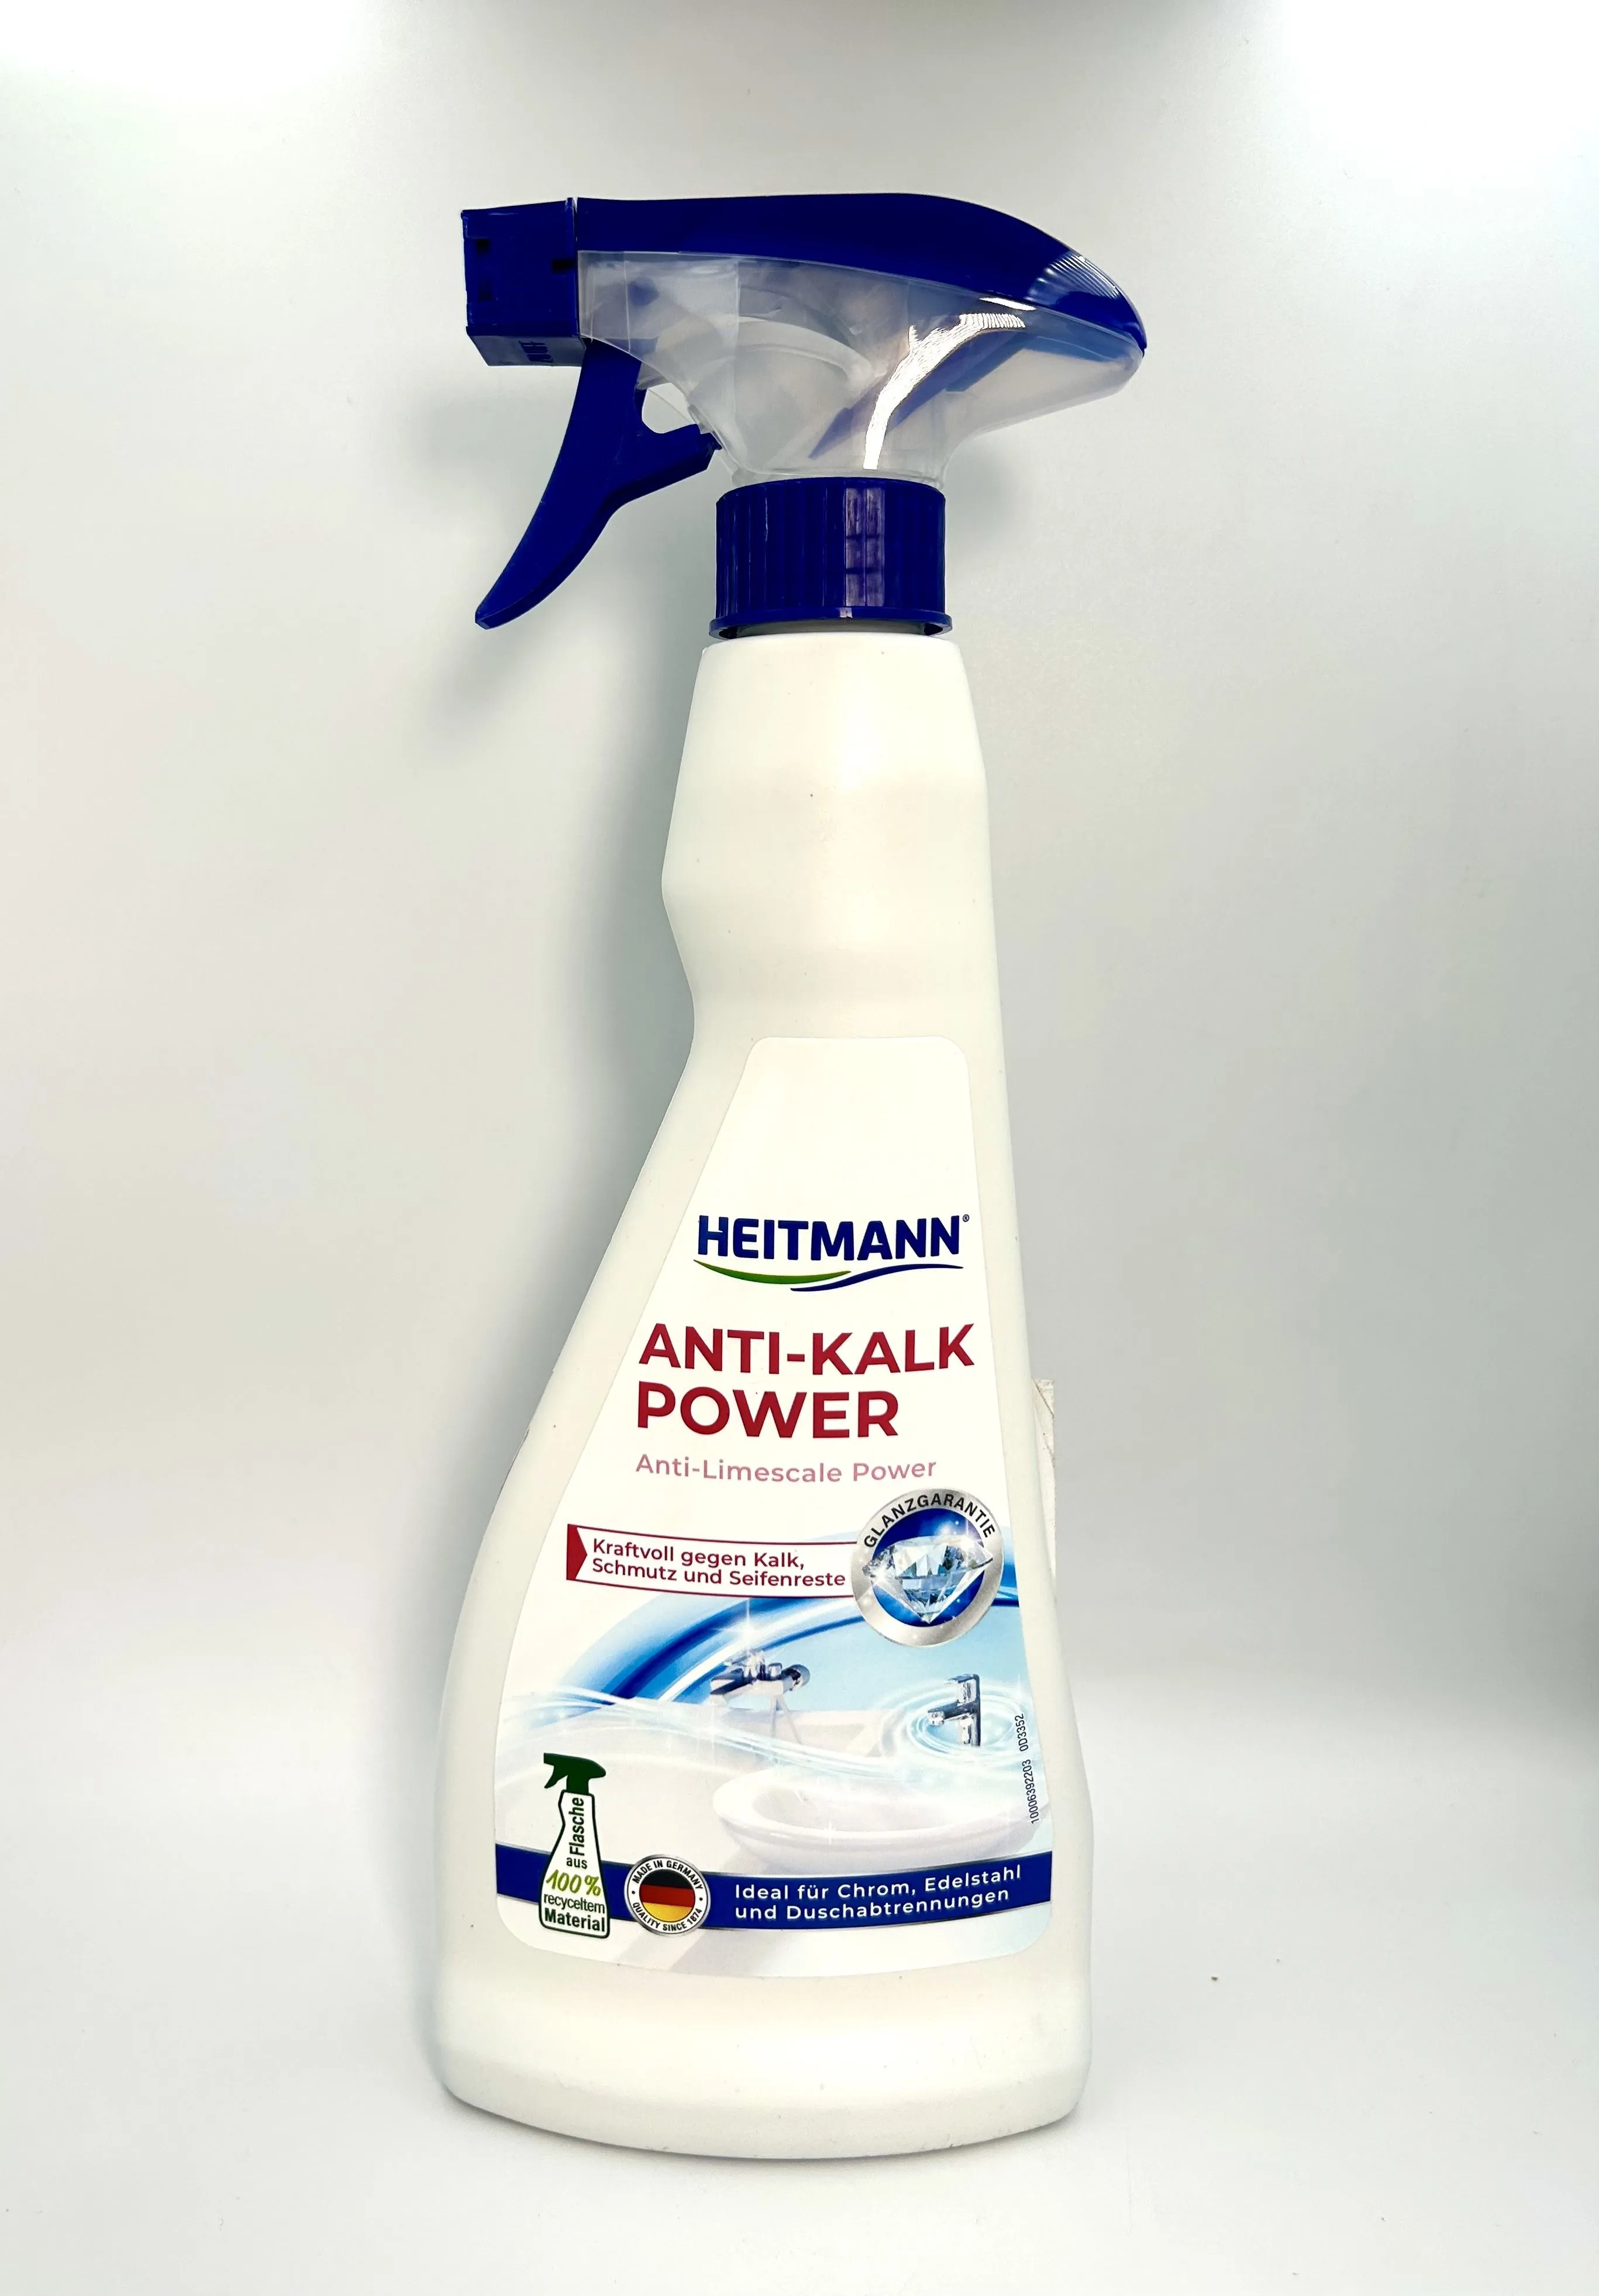 Heitmann Anti-Kalk Power Анти-известь Мощный спрей очиститель для акриловых ванн, душевых кабин, смесителей 500 мл